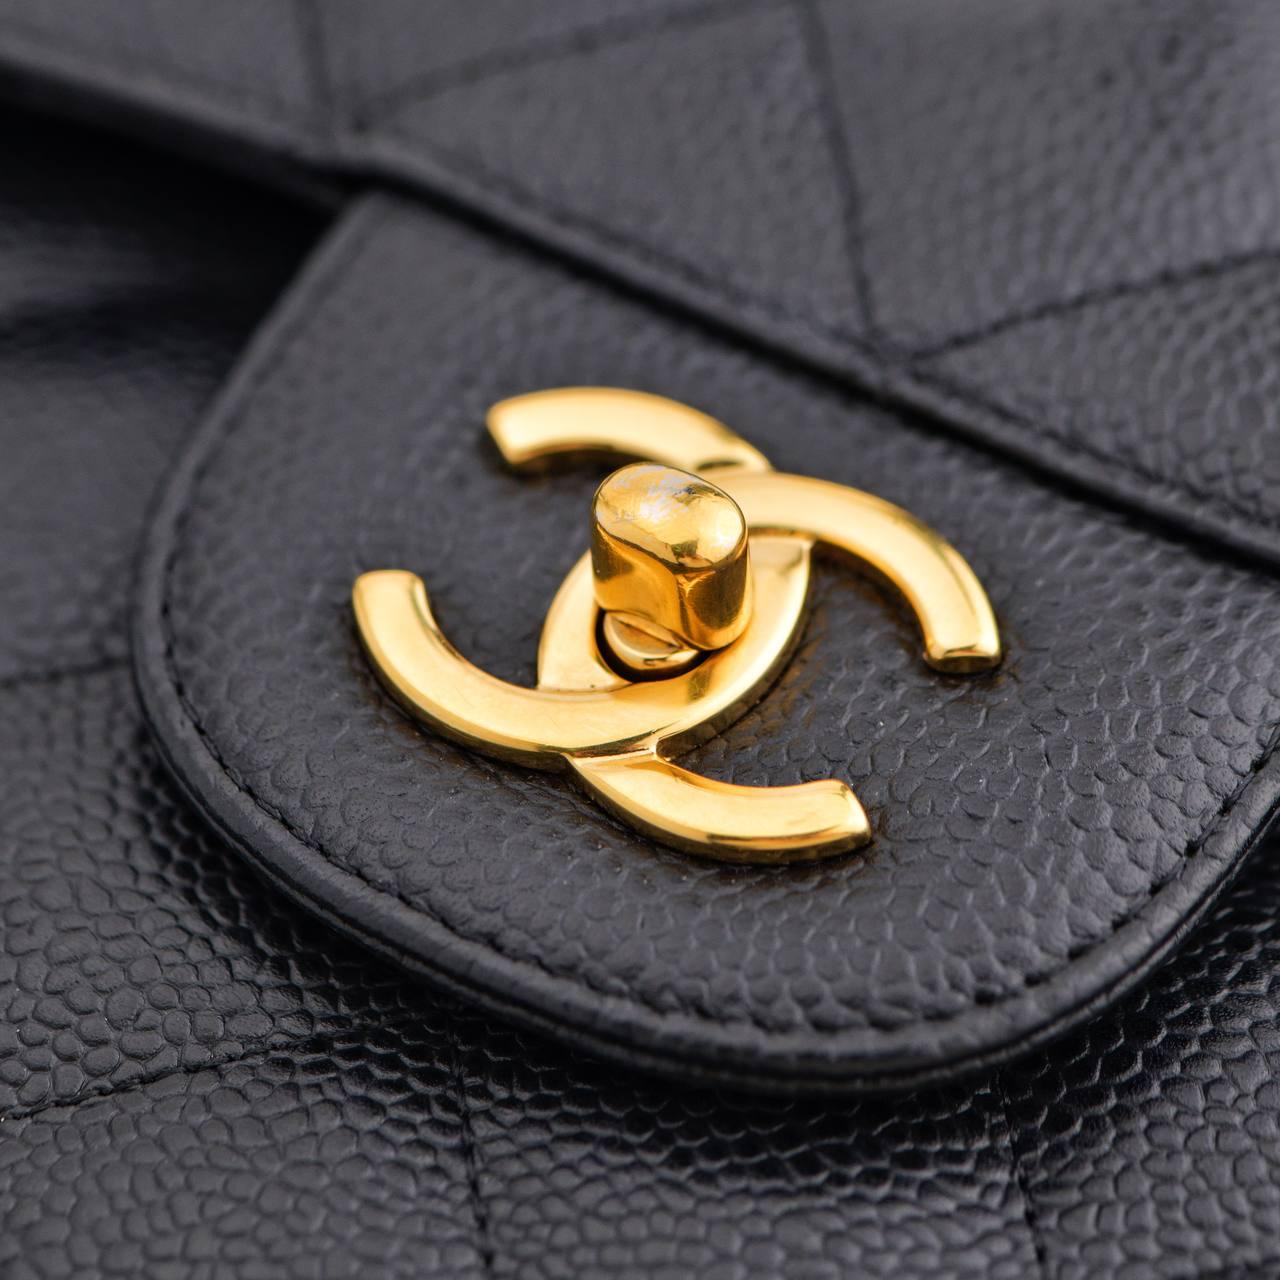 CHANEL Jumbo Schwarze Tasche aus Kalbsleder in Kaviar mit doppelter Klappe und GHW für Damen oder Herren im Angebot